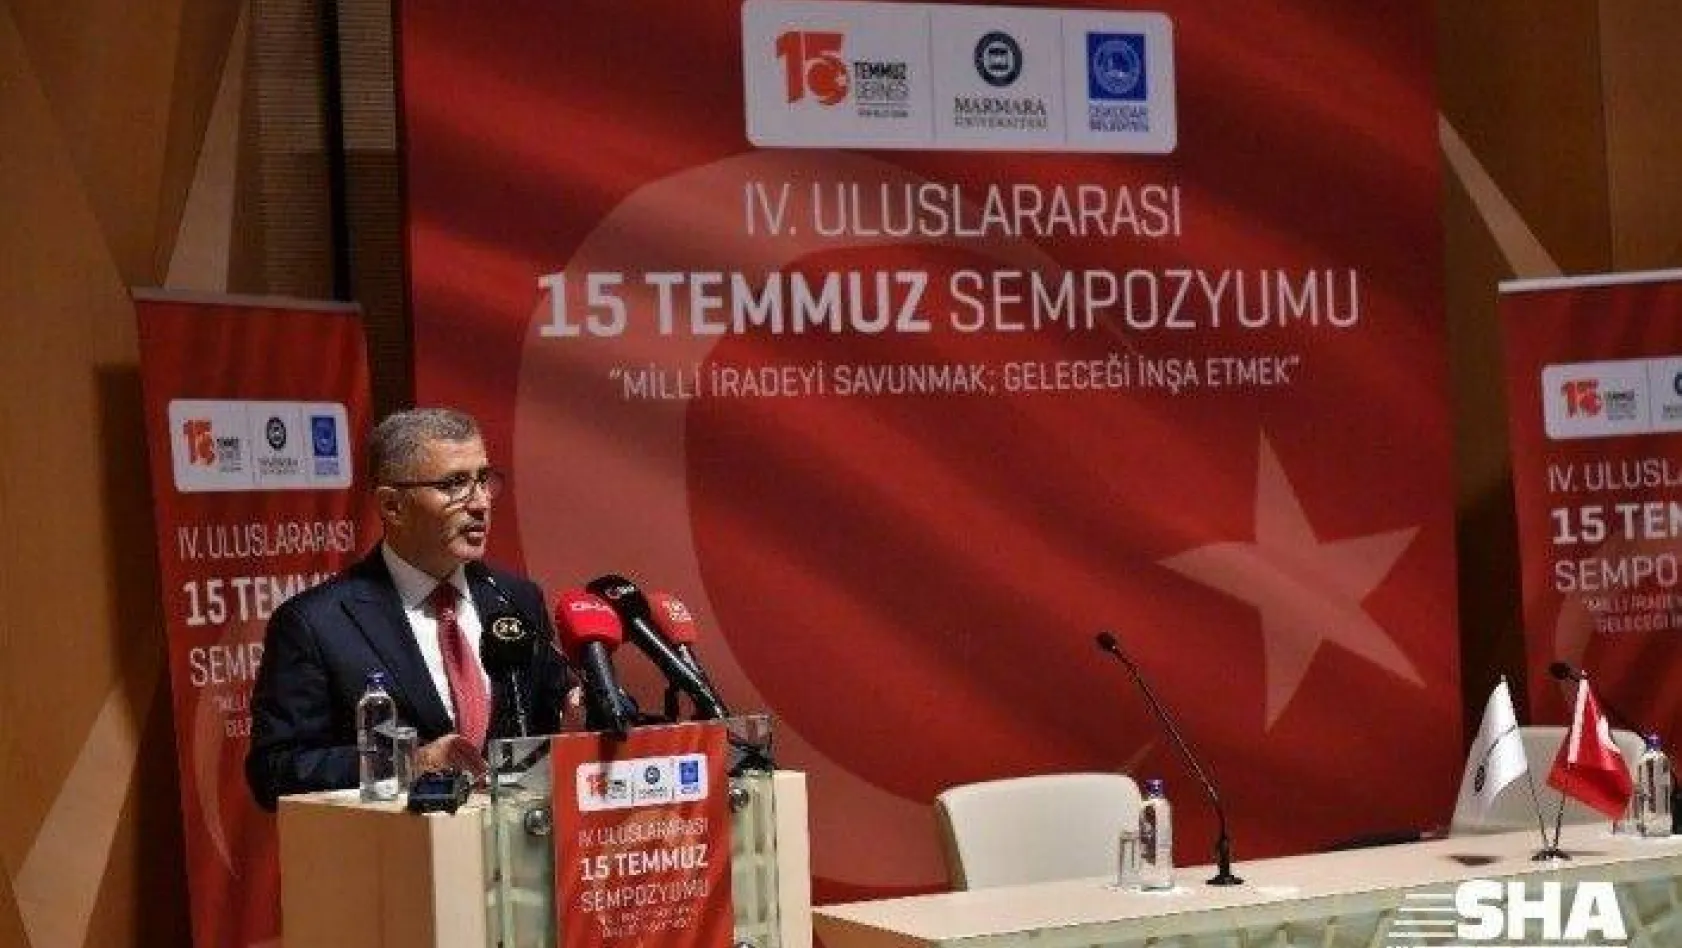 Adalet Bakanı Abdulhamit Gül: 'FETÖ'yü milletin üzerine salan irade egemen olsaydı bugün Ayasofya'yı yeniden ibadete açmak mümkün olamayacaktı'